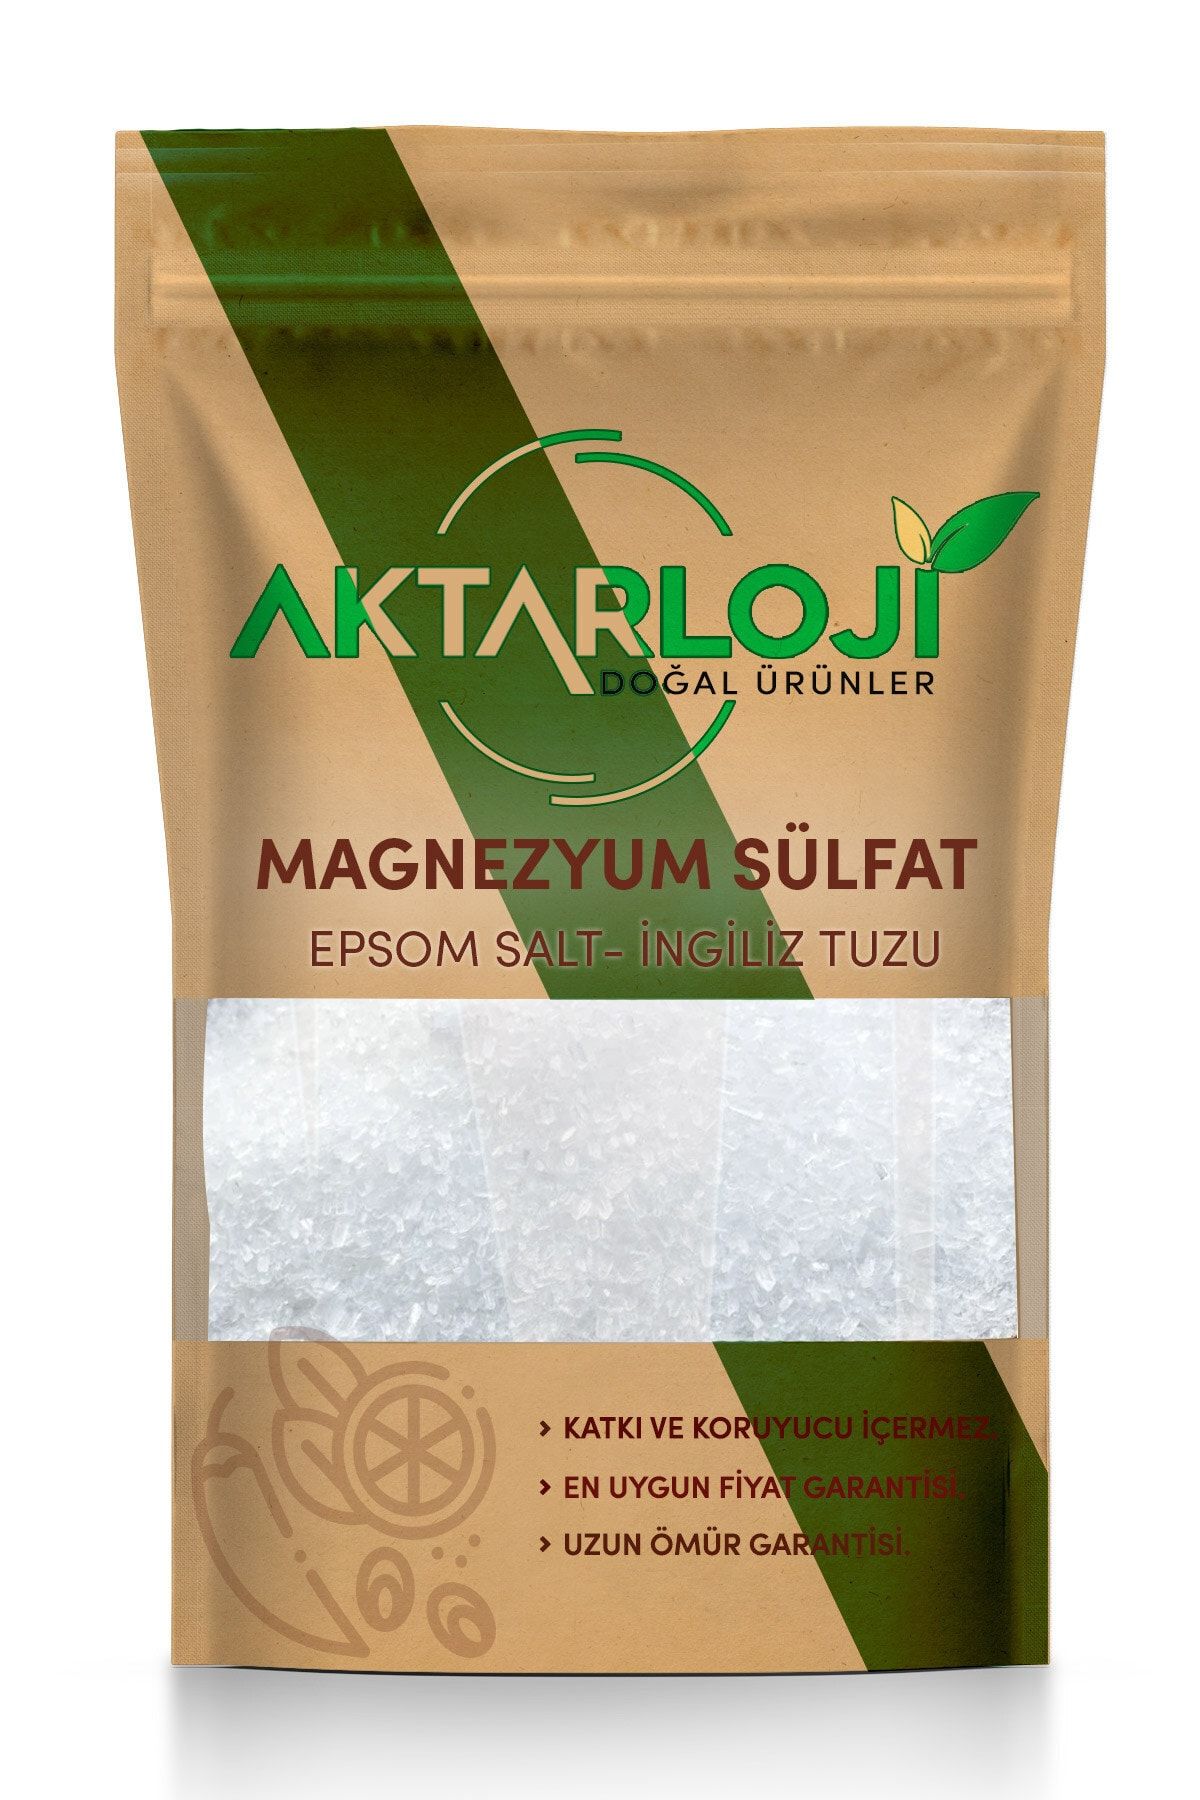 aktarloji 5 kg Magnezyum Sülfat, Ingiliz Tuzu, Epsom Salt (yenilebilir)